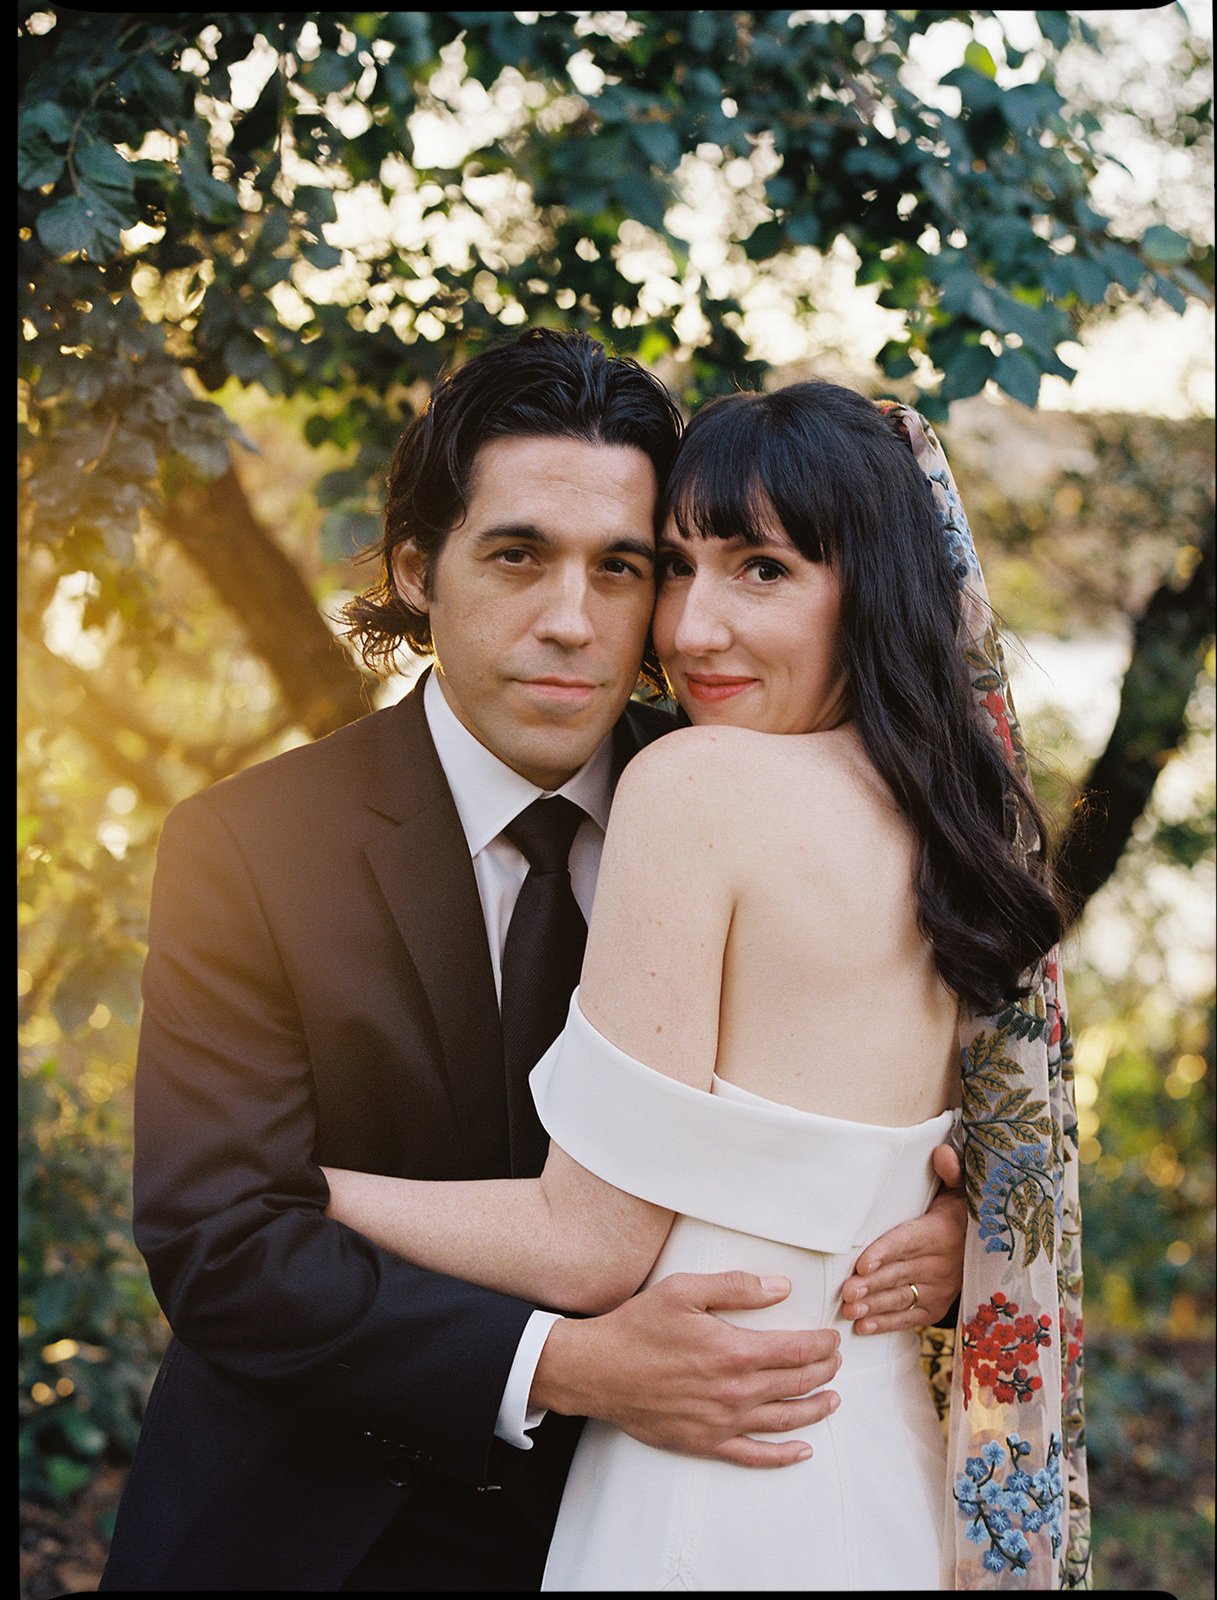 Best-Austin-Wedding-Photographers-Elopement-Film-35mm-Asheville-Santa-Barbara-Laguna-Gloria-55.jpg